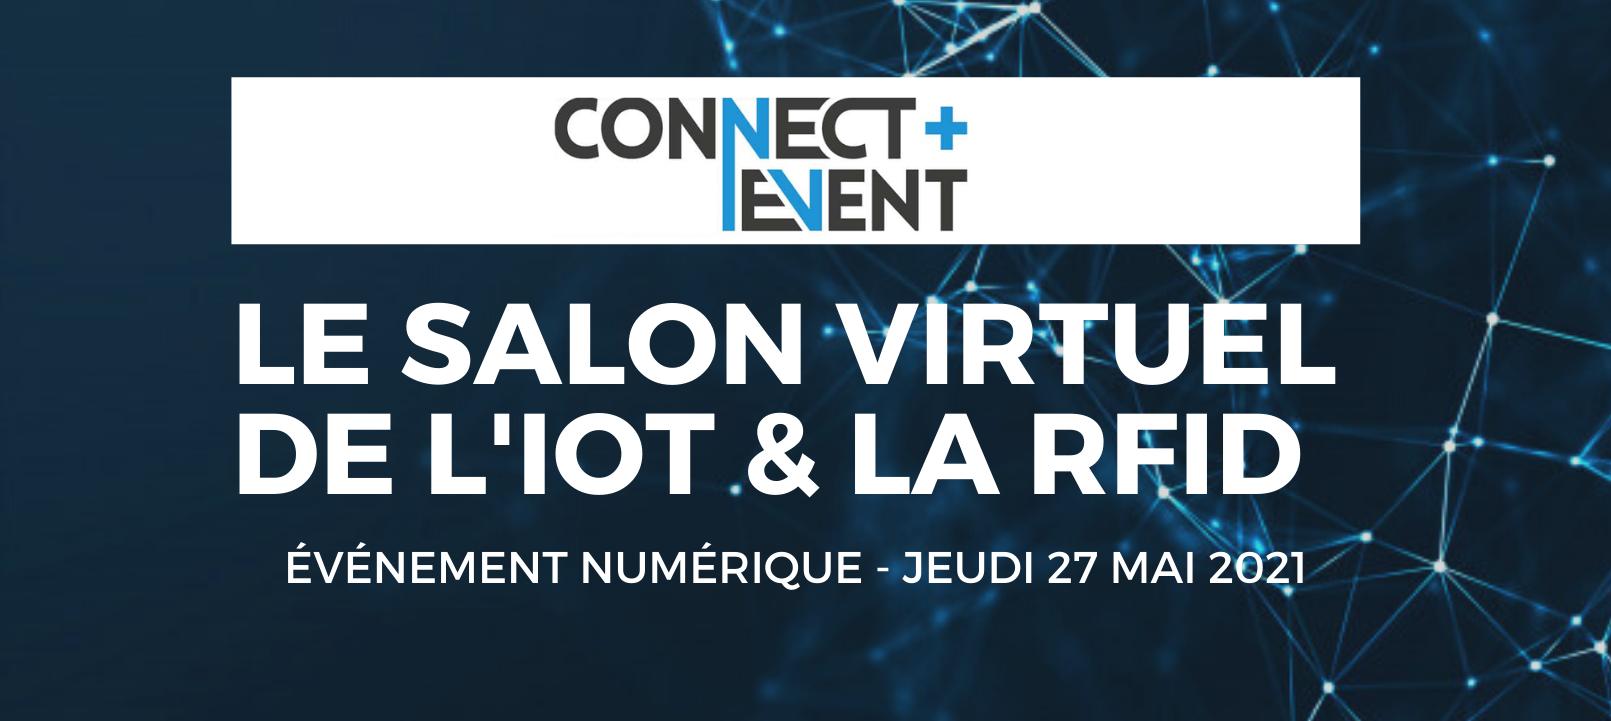 Salon Virtuel Connect+ Event